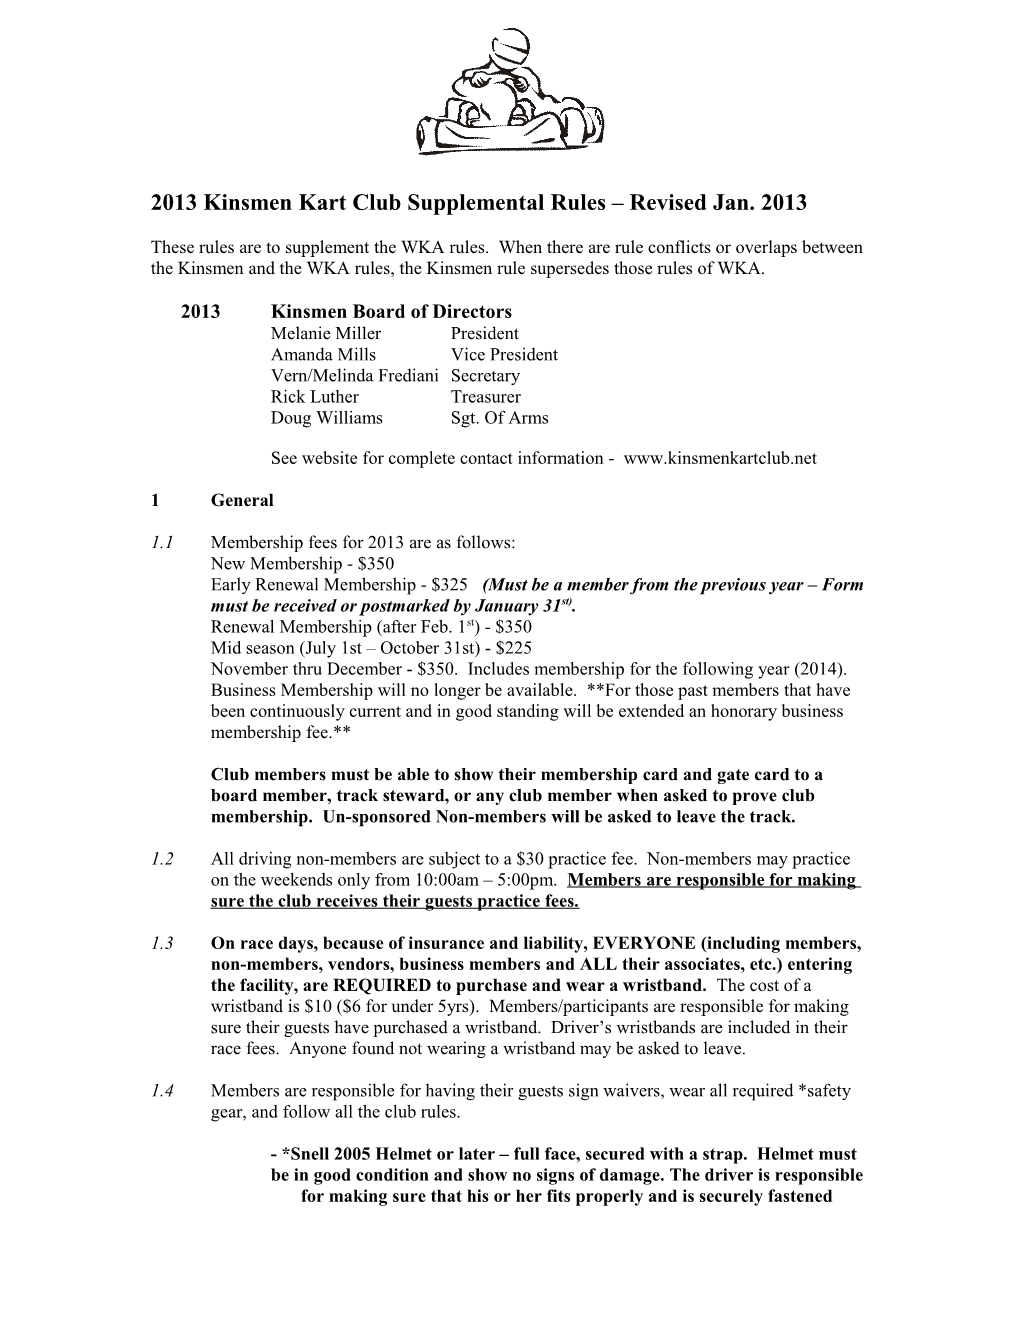 2006 Kinsmen Kart Club Supplemental Rules Revised 12-11-2005